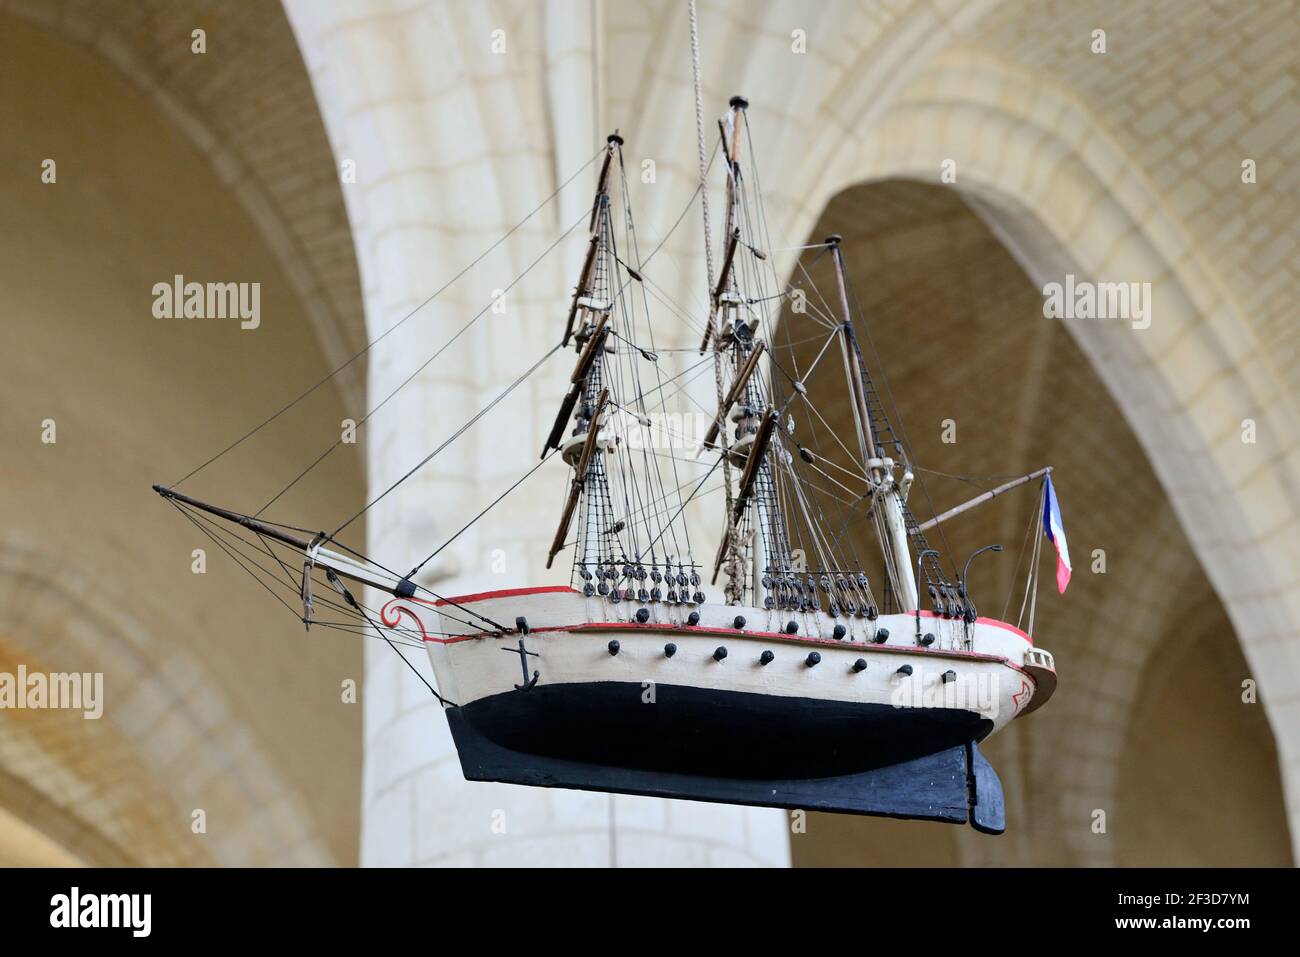 Esnandes (centre-ouest de la France) : ex-voto représentant un bateau, le voilier Pandora, dans l'église Saint-Martin d'Esnandes Banque D'Images